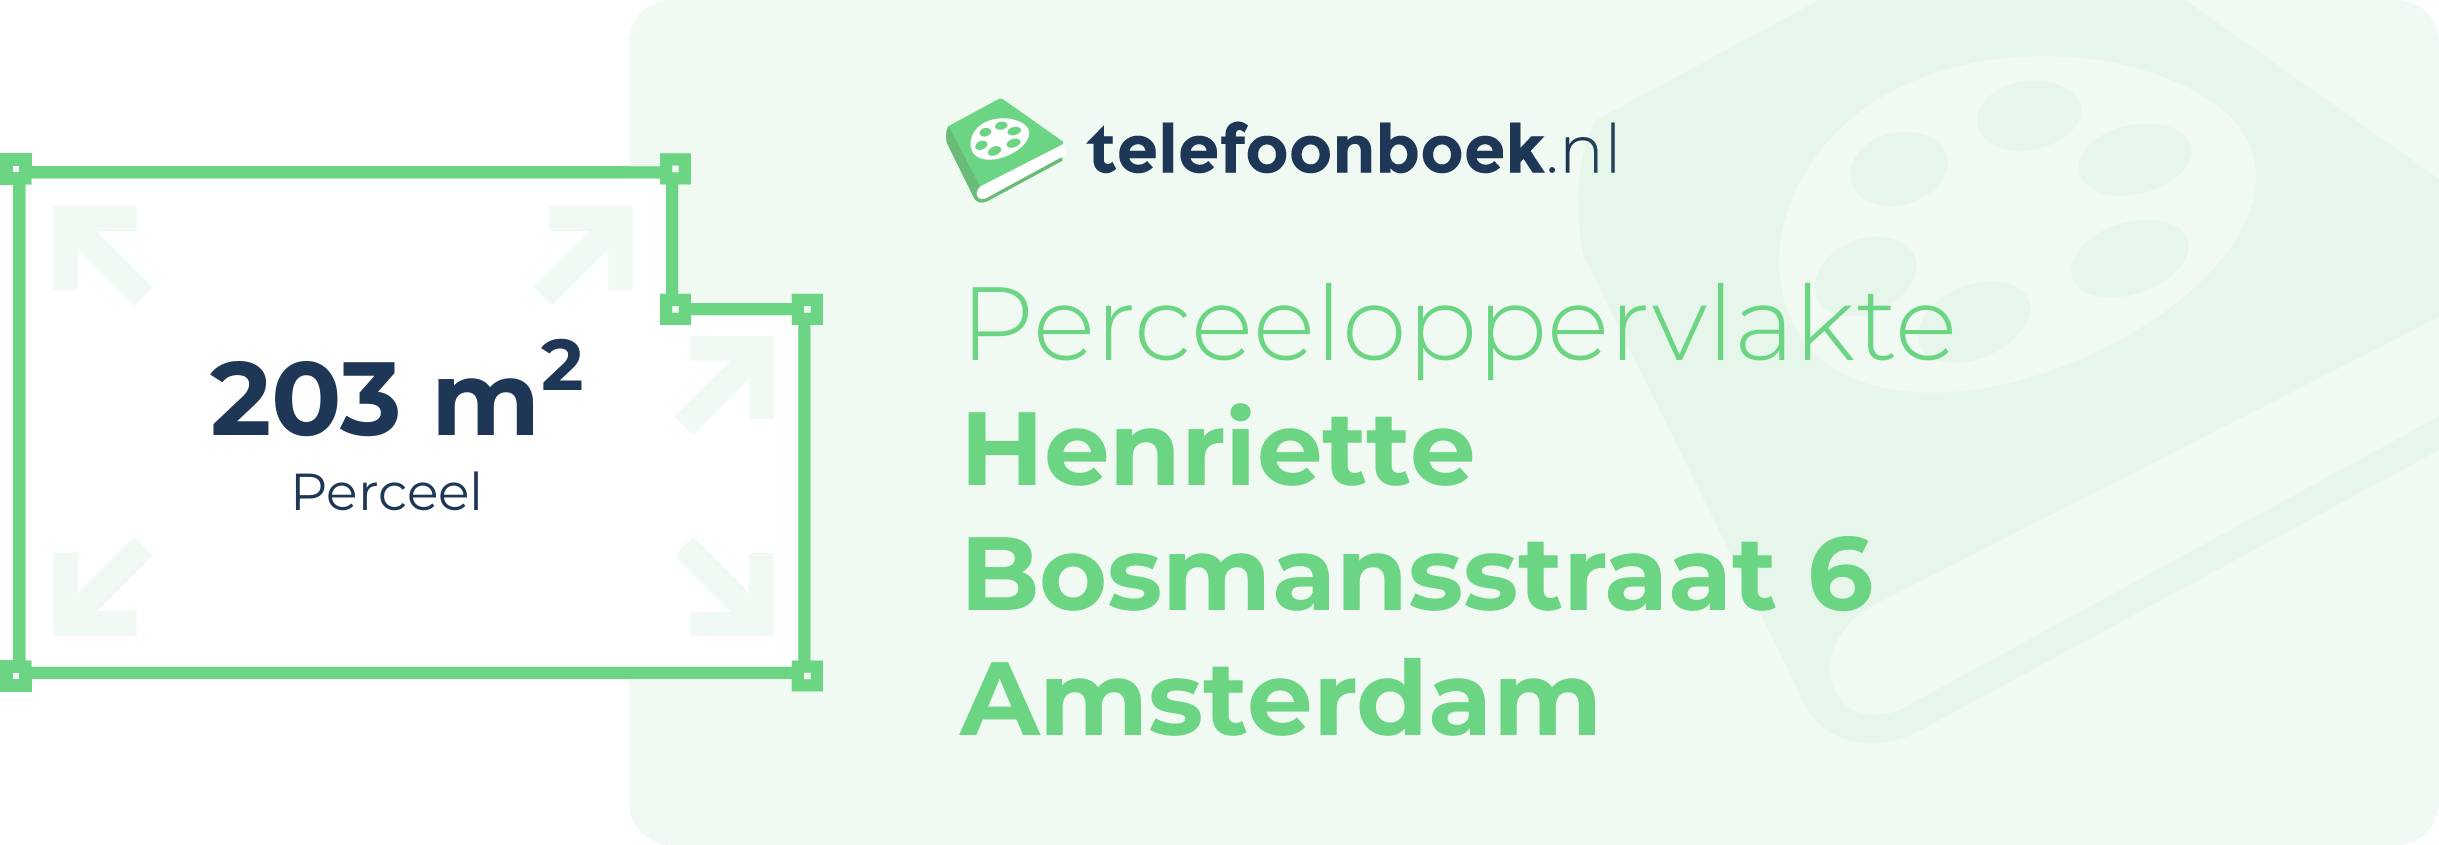 Perceeloppervlakte Henriette Bosmansstraat 6 Amsterdam